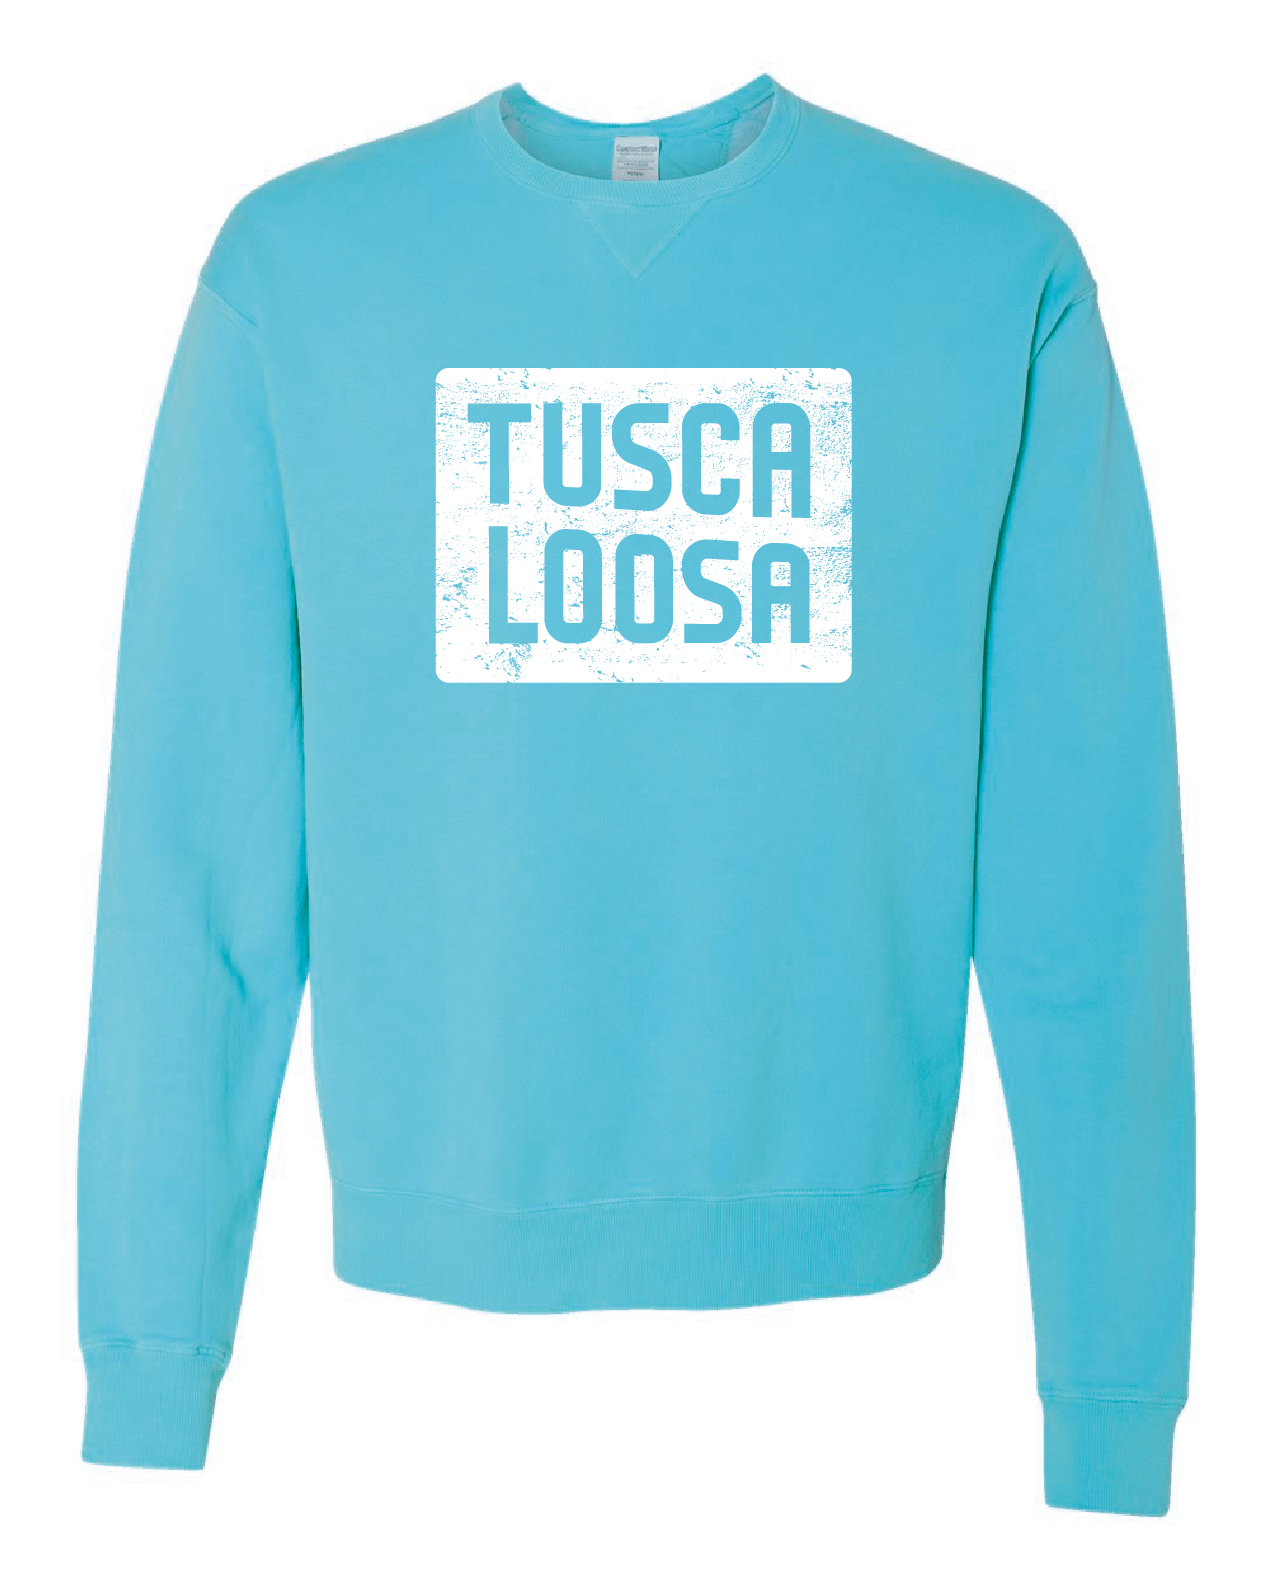 Visit Tuscaloosa: WHITE TUSCALOOSA Crewneck Sweatshirt